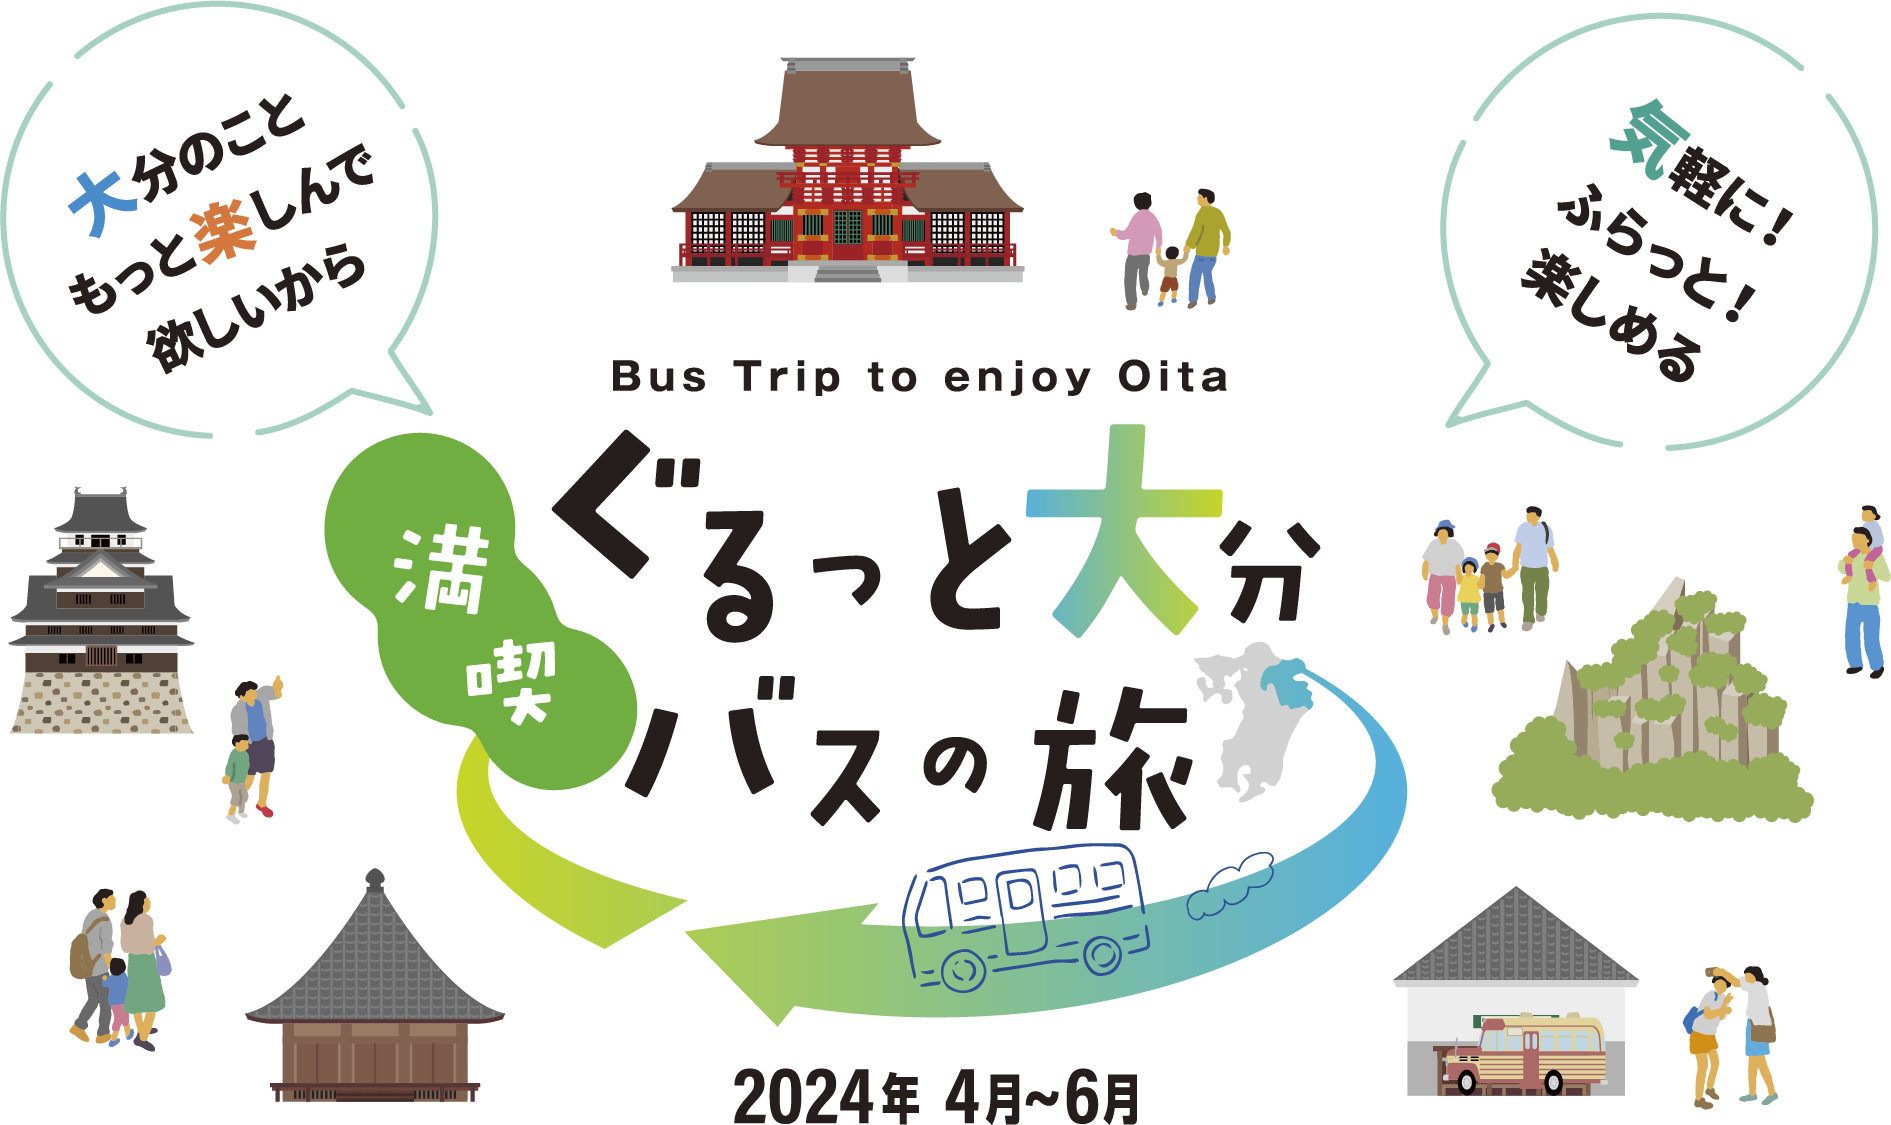 Bus Trip to enjoy Oita ぐるっと大分バスの旅 2024年4月〜6月 大分のこともっと楽しんで欲しいから　気軽に！ふらっと！楽しめる！